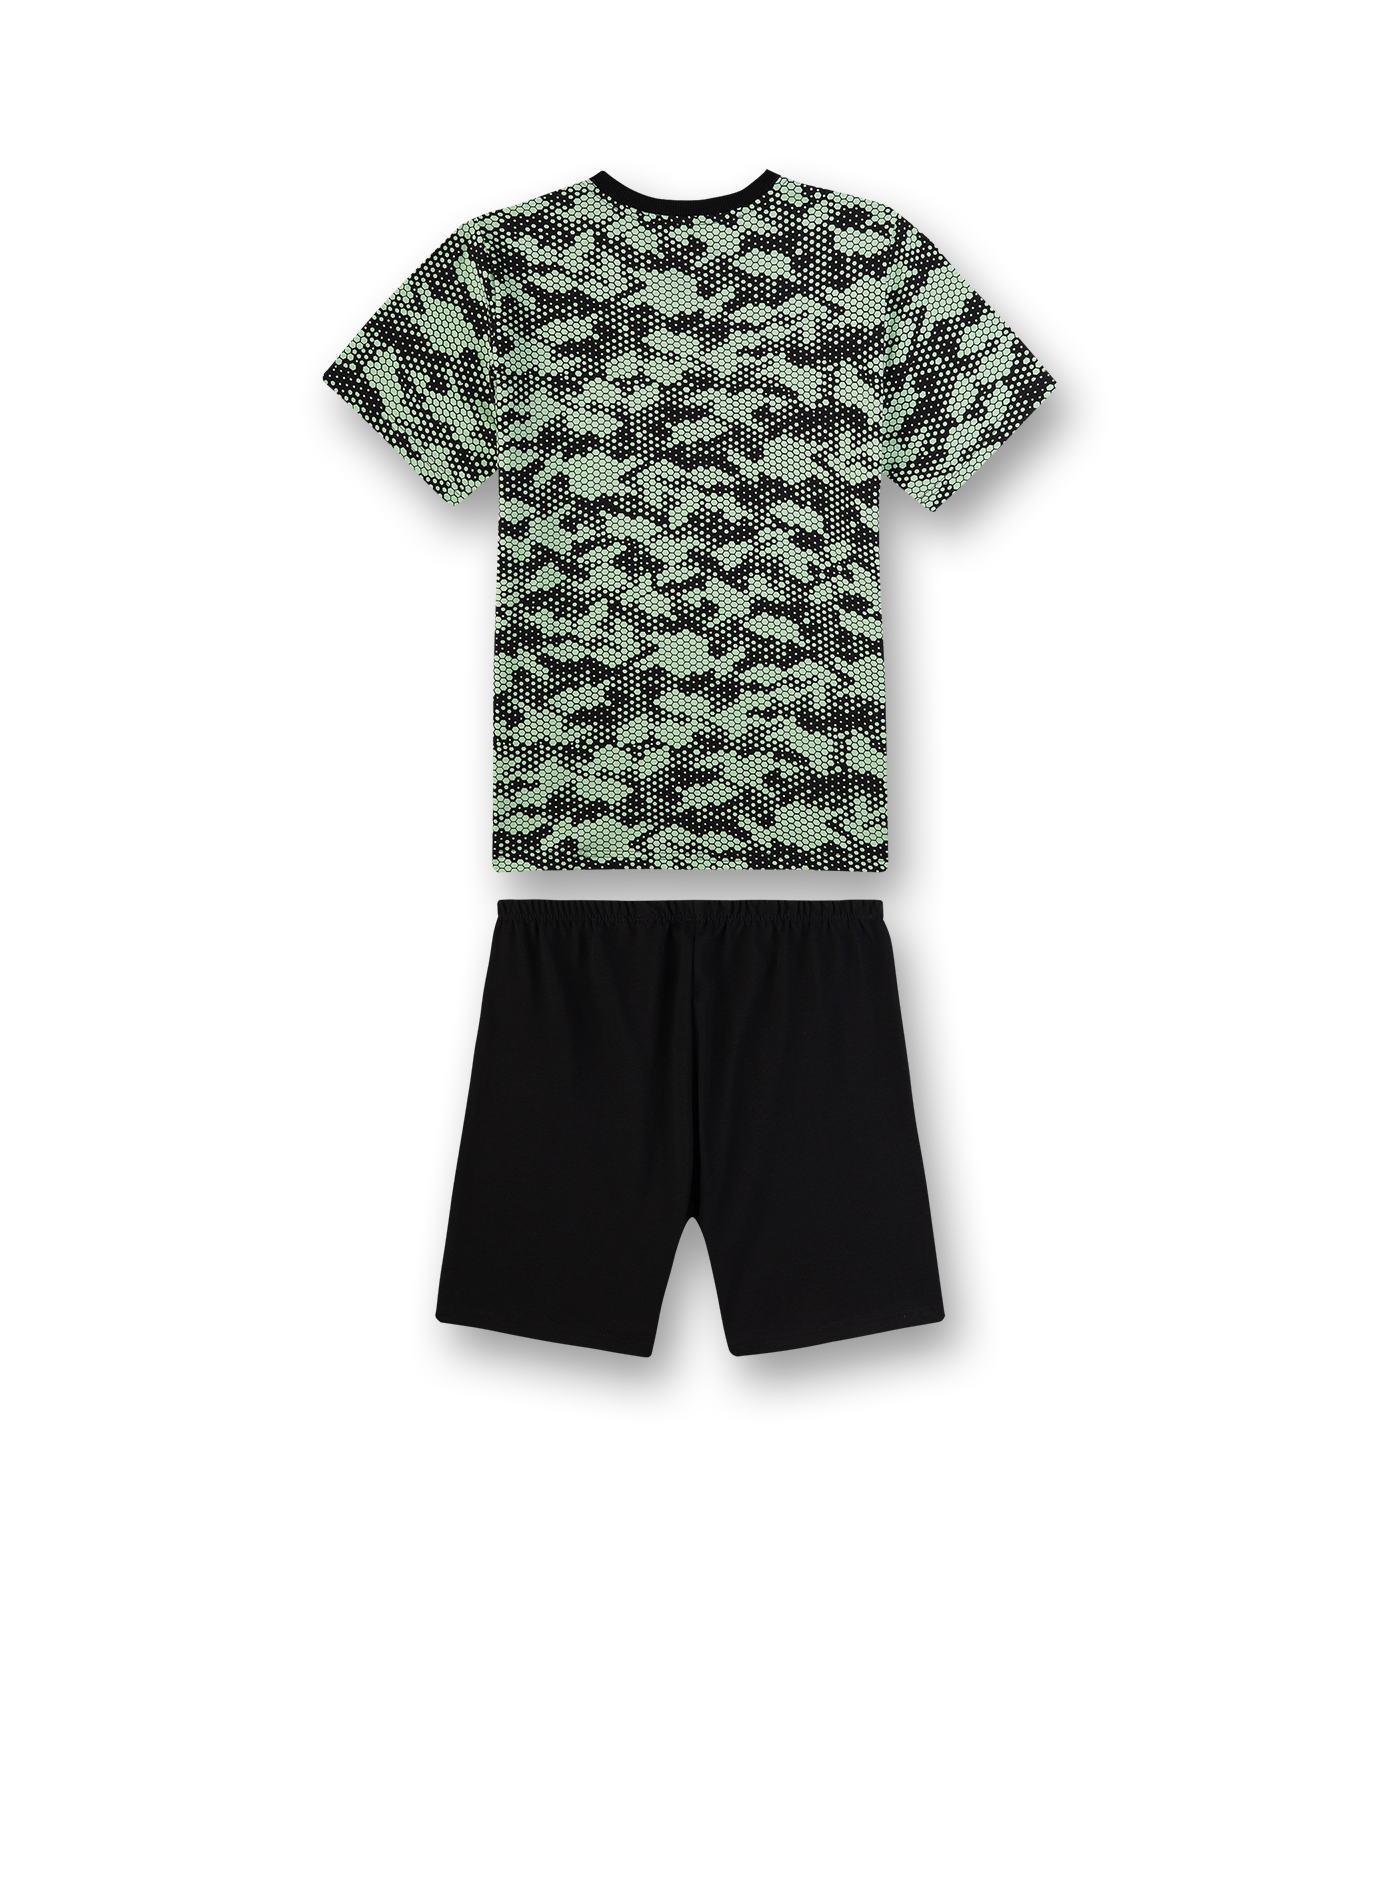 Jungen-Schlafanzug Camouflage The Game